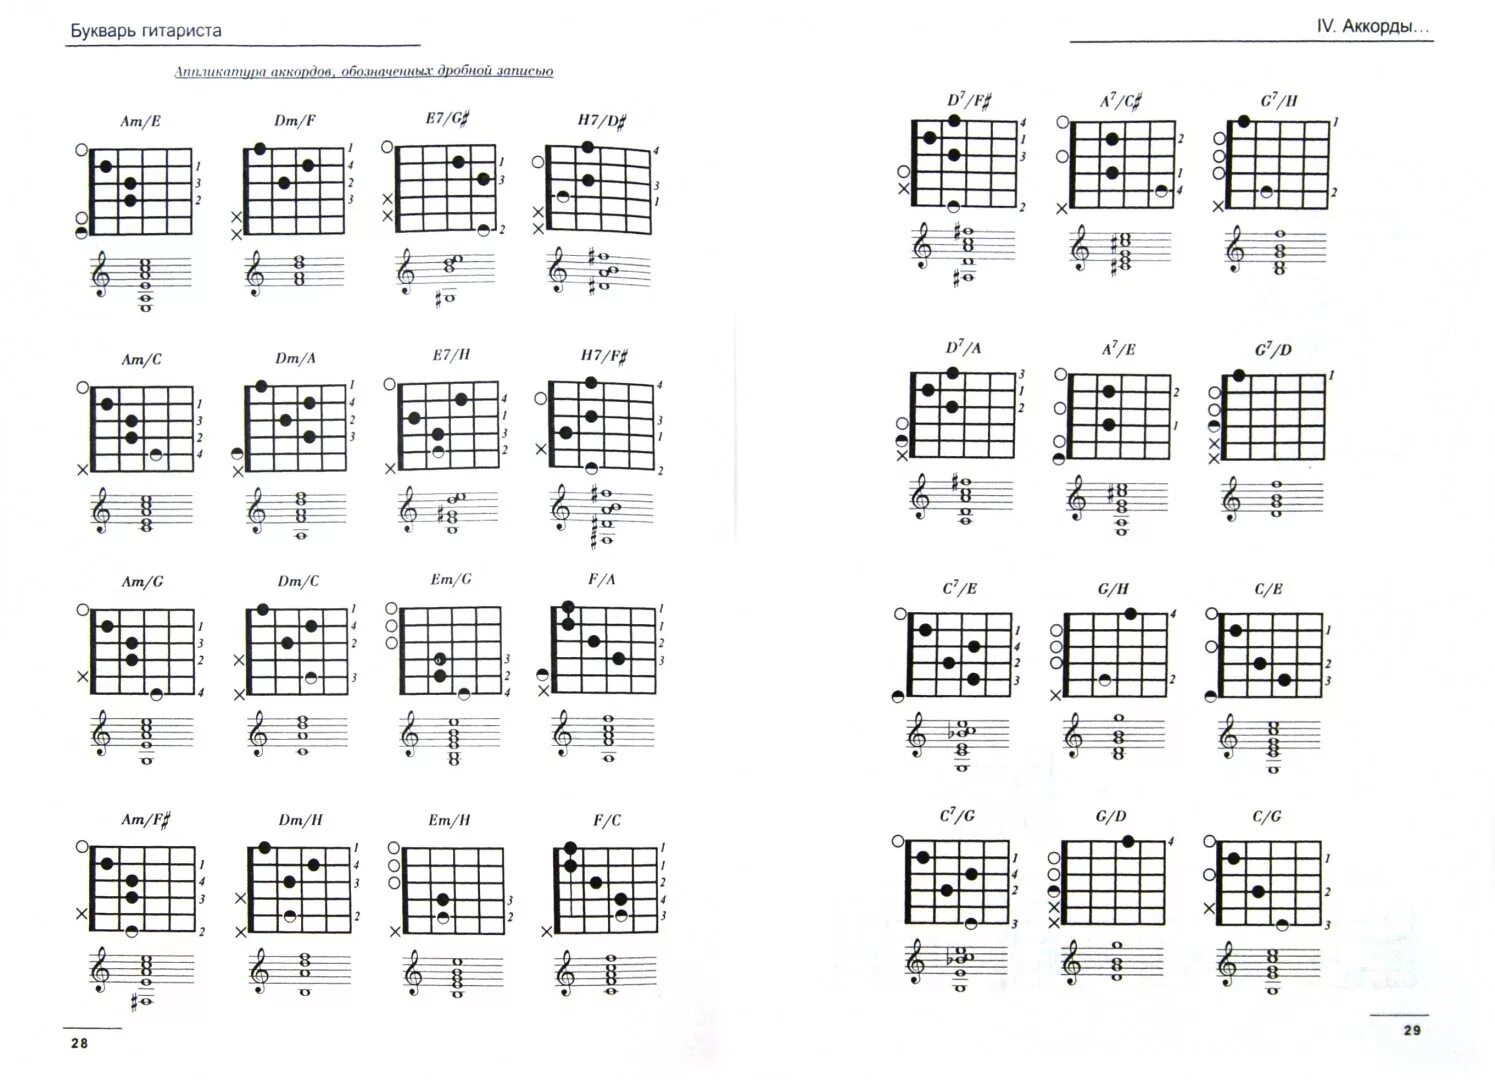 Аккорды для гитары таблица для начинающих. Схемы аккордов. Аккорды для гитары шестиструнной. Аппликатура аккордов для гитары. Таблица аккордов для гитары.